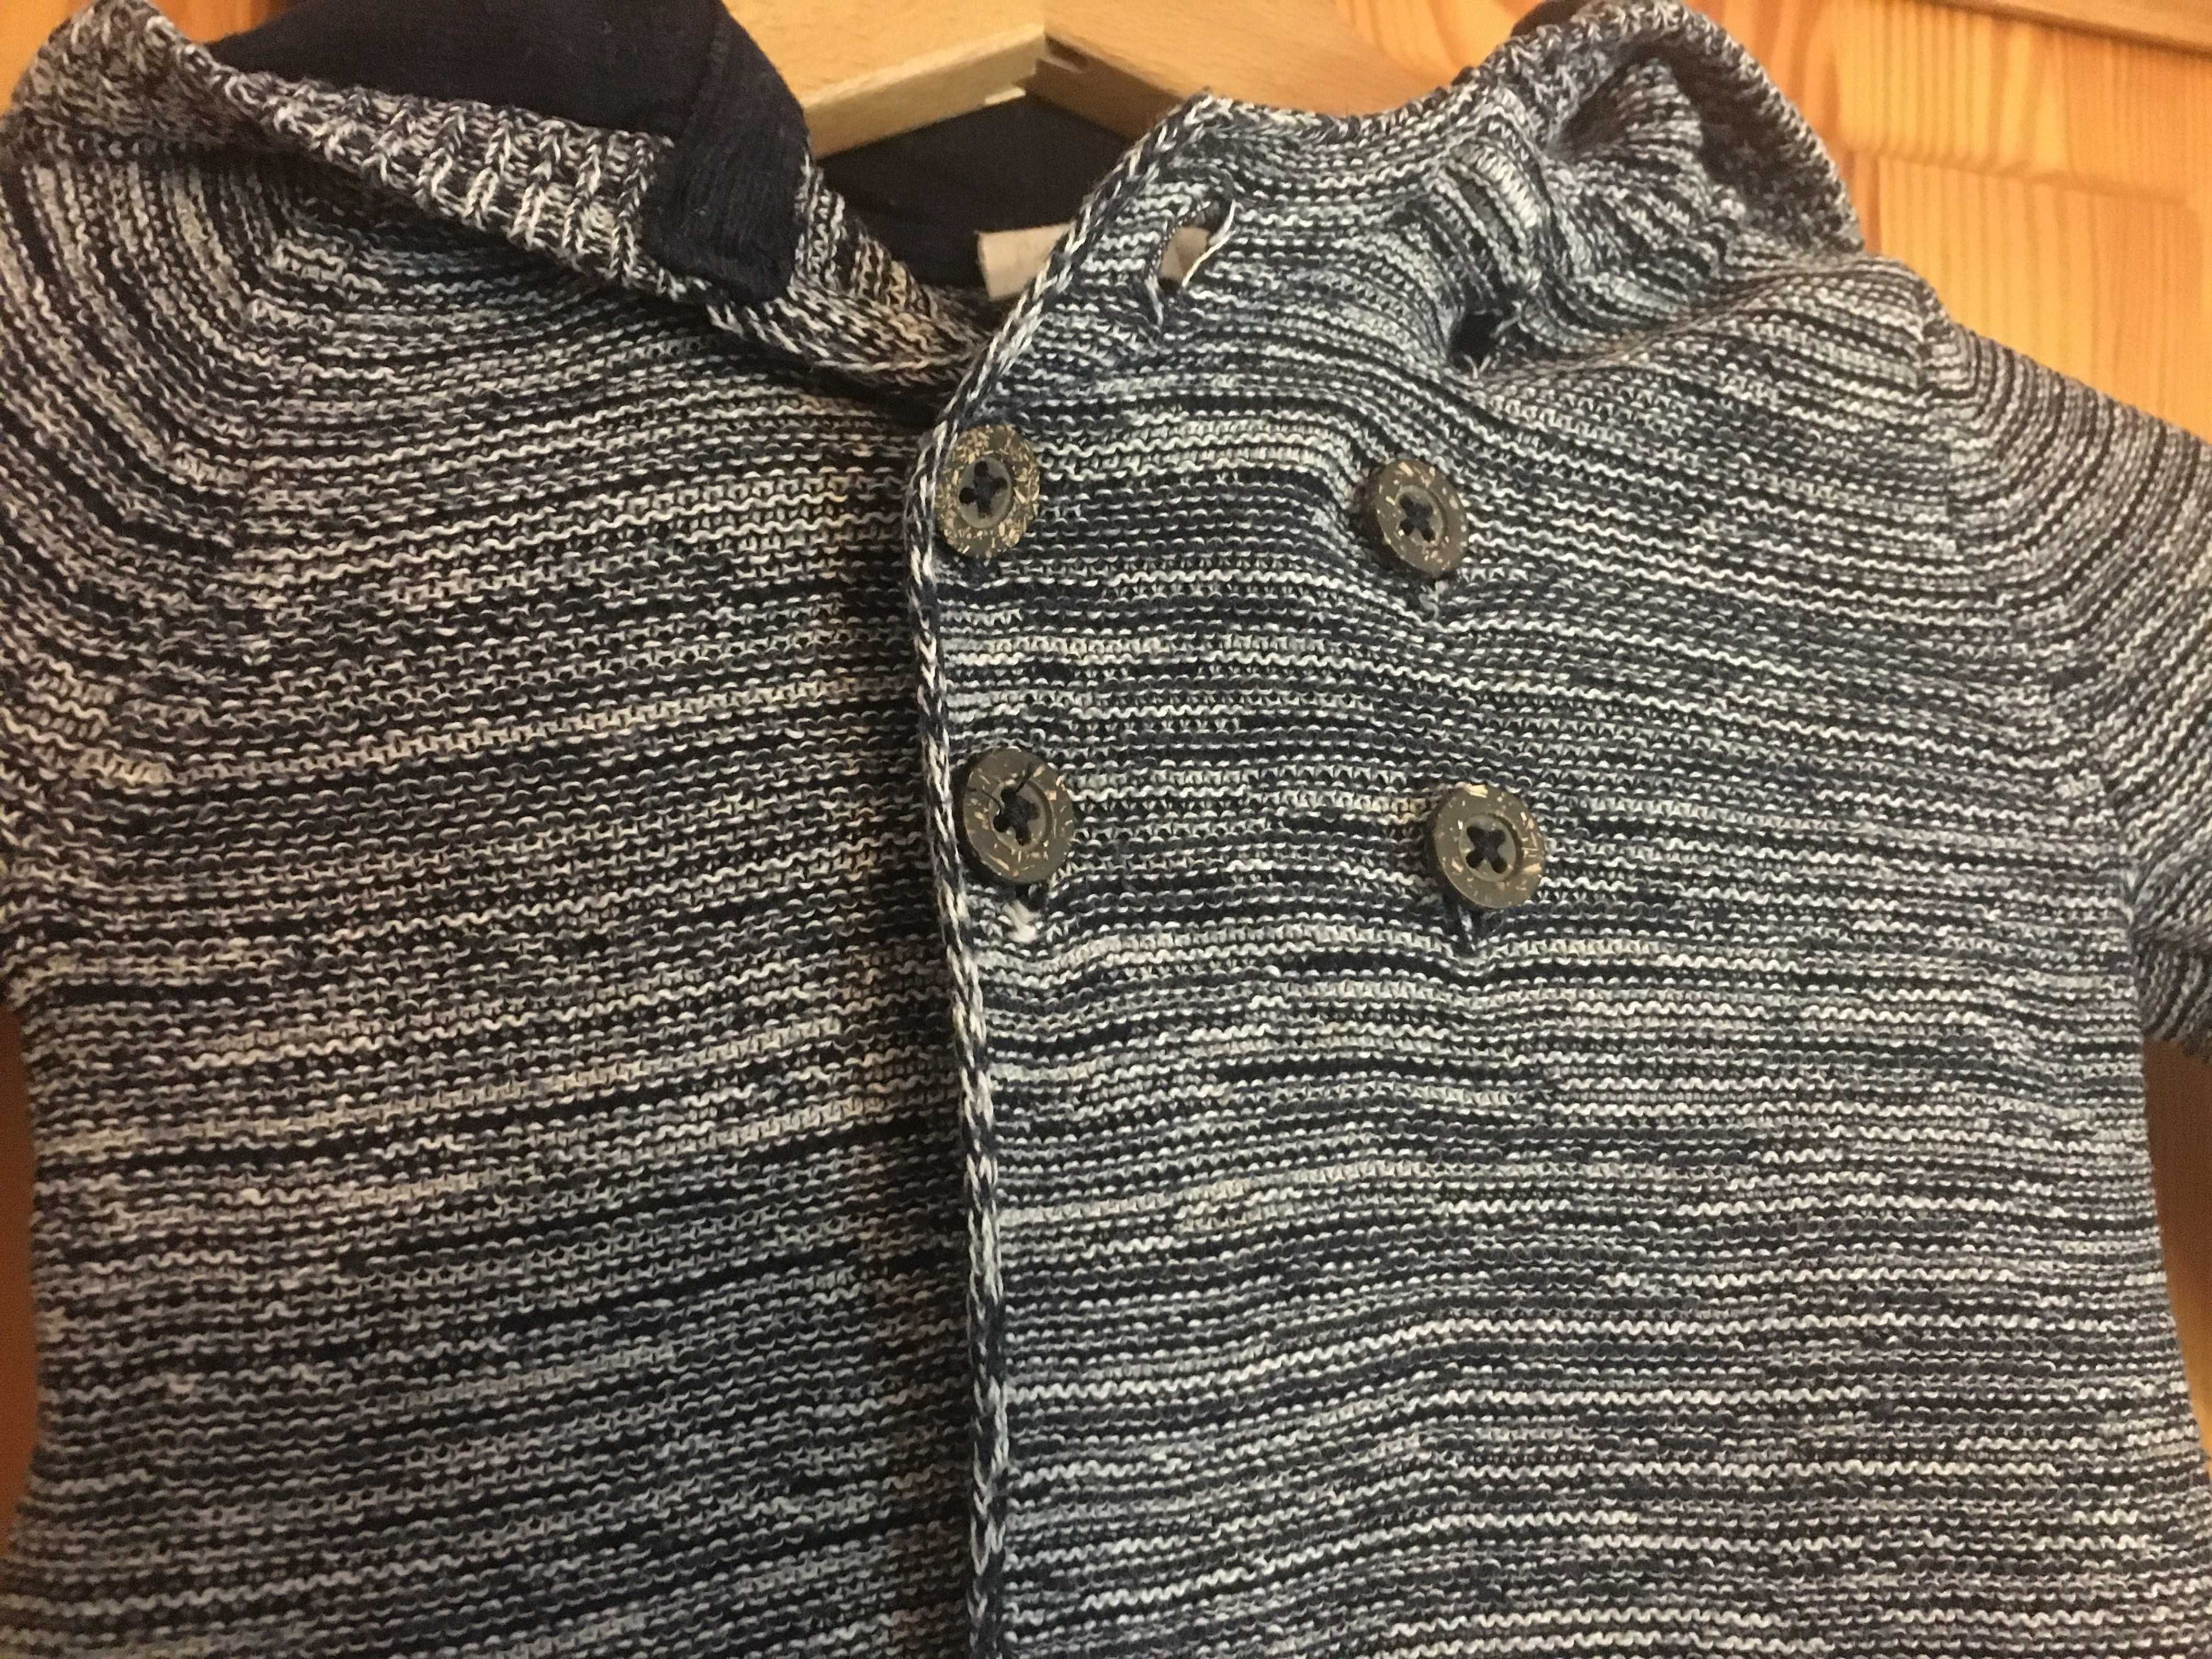 Szary sweterek chłopięcy sweter dla chłopca szary melanż 62/68 2-6m